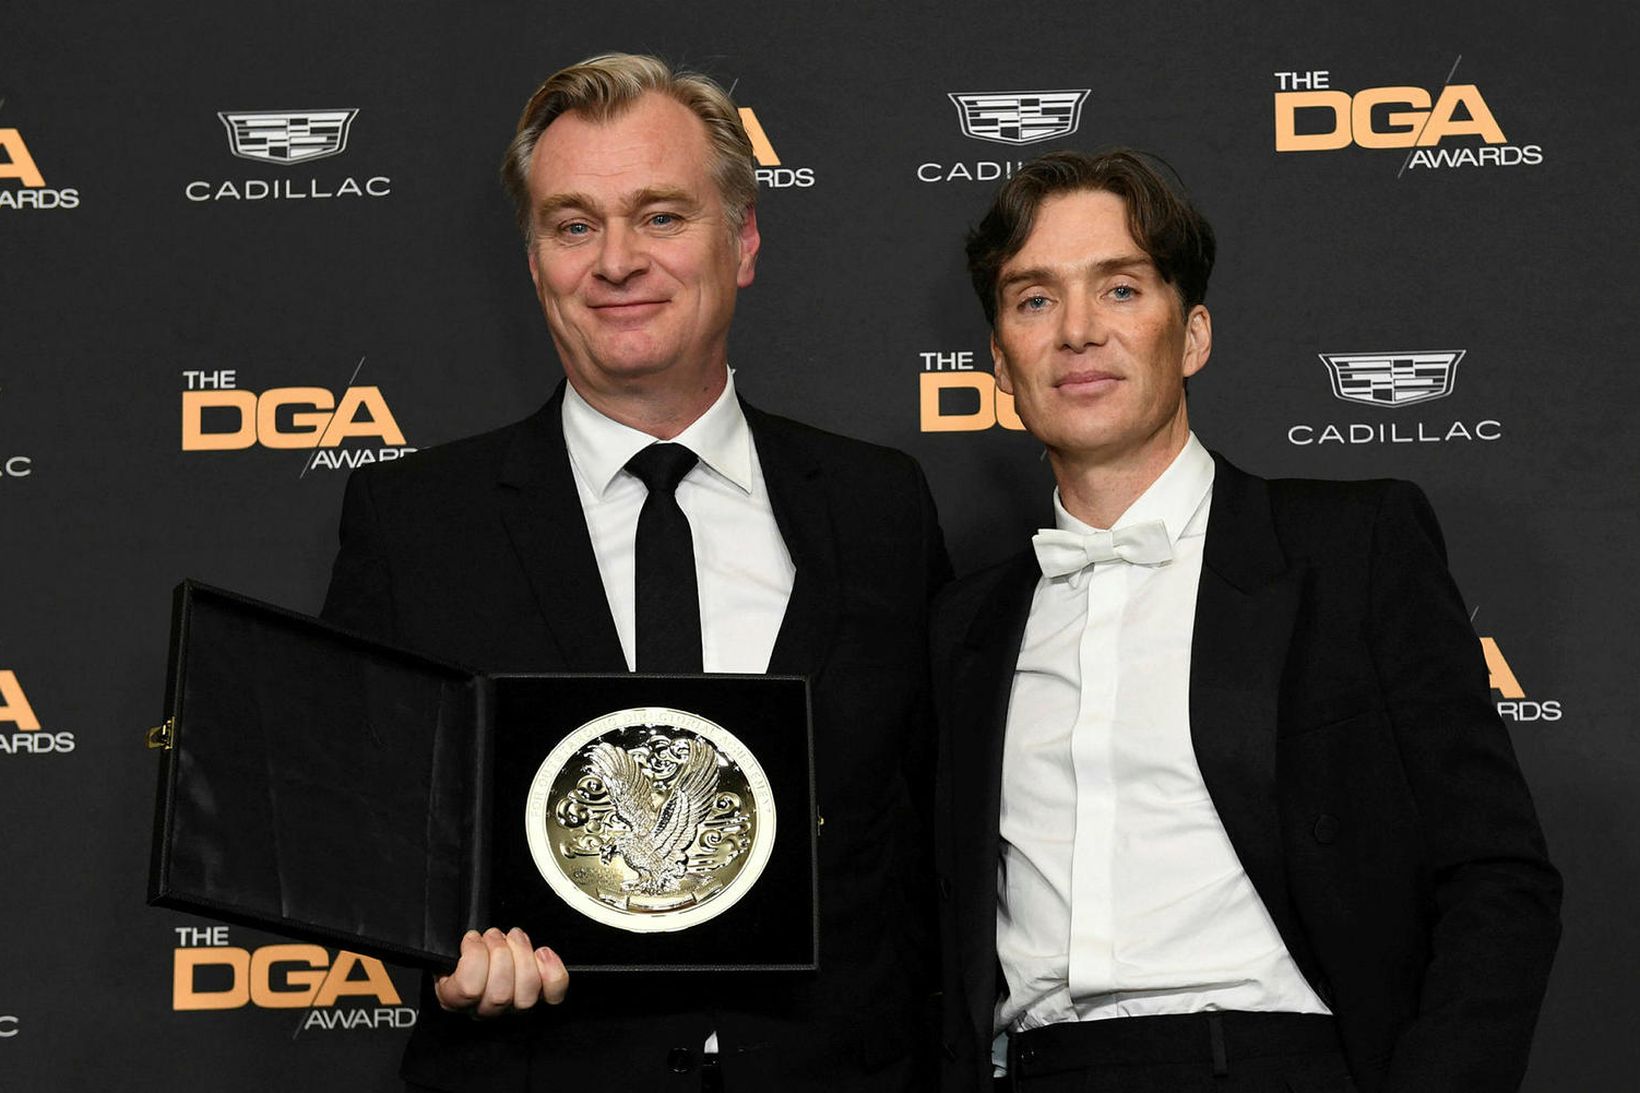 Breski leikstjórinn Christopher Nolan og írski leikarinn Cillian Murphy.